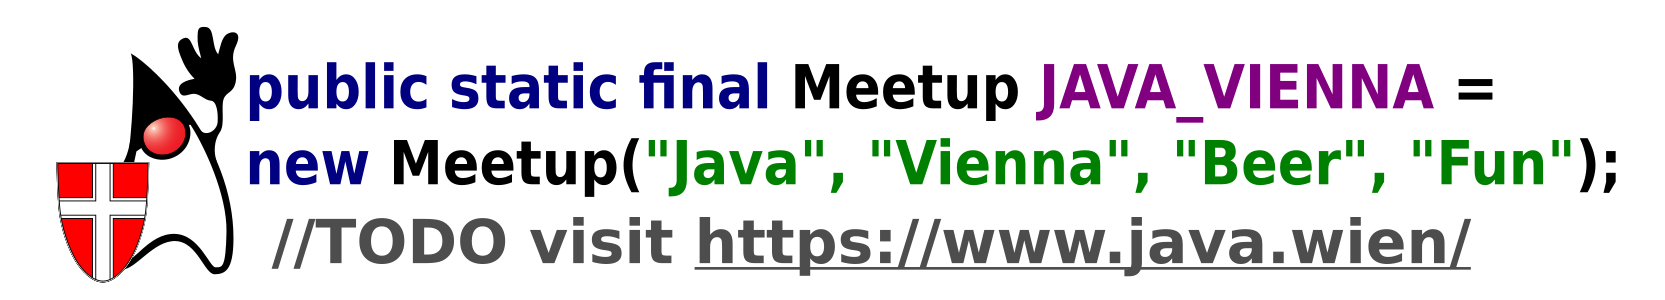 Java-Vienna Meetup